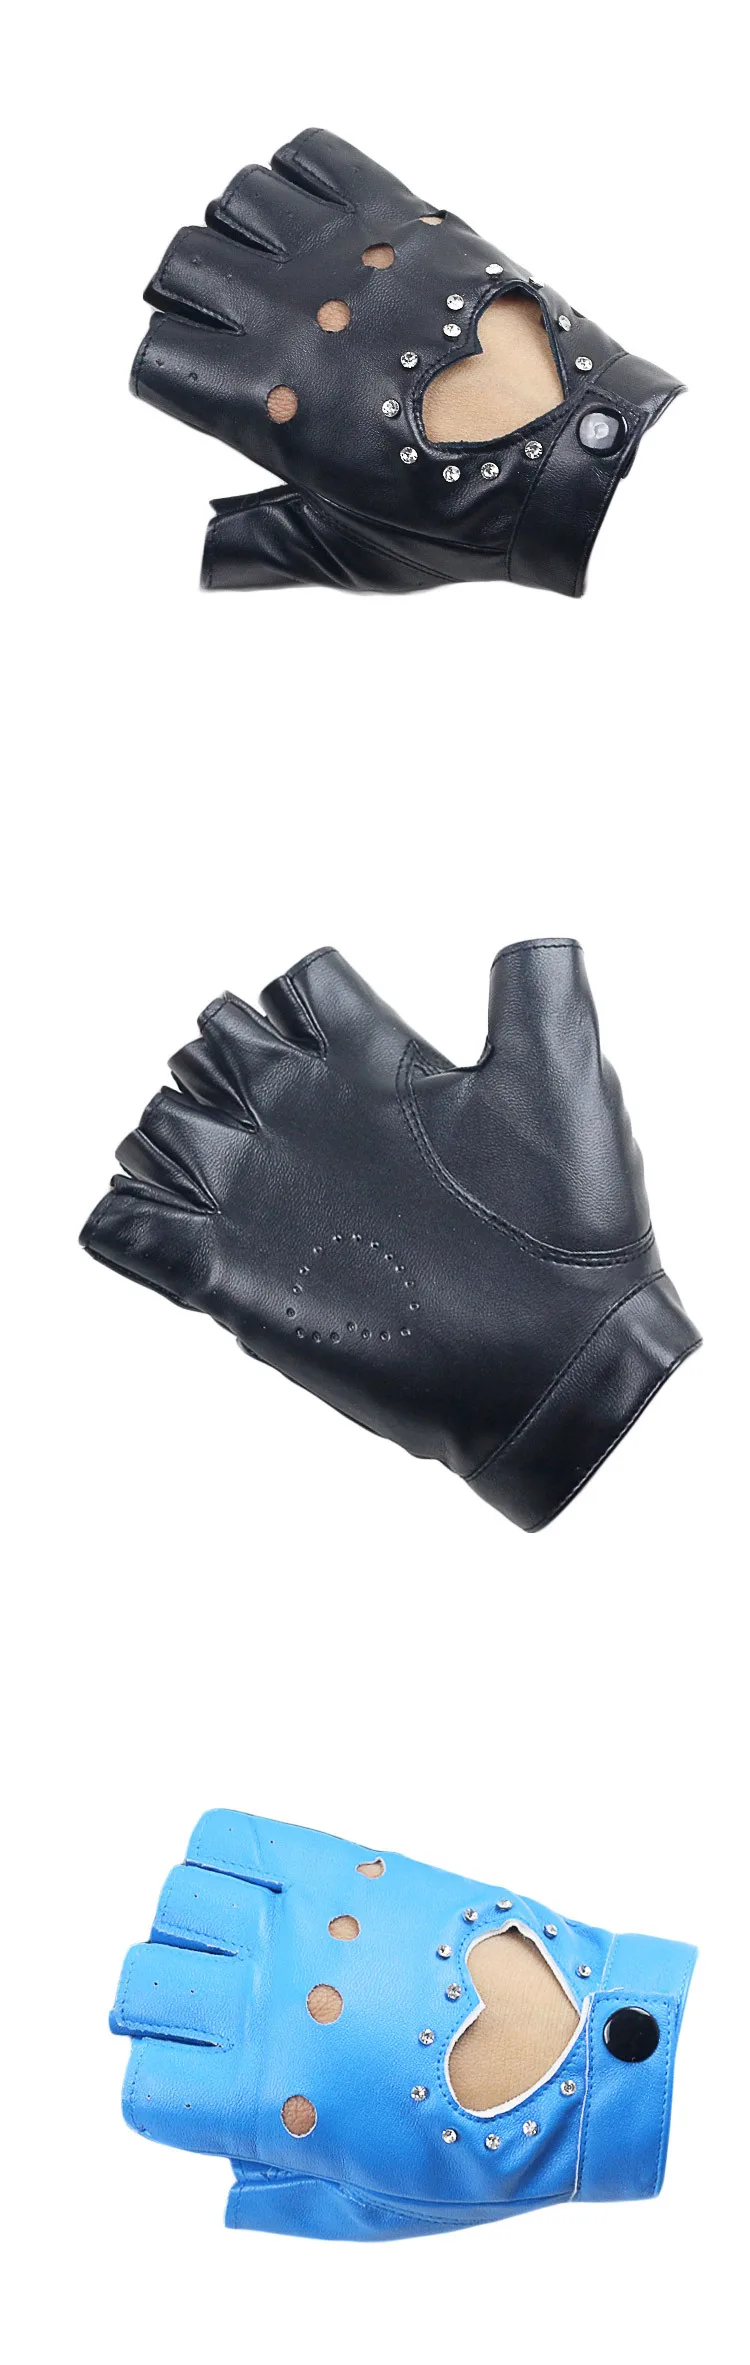 LongKeeper Для женщин кожаные перчатки PU пальцев сердце Форма полые варежки для уличных танцев diamond Дизайн фотографии перчатки G304